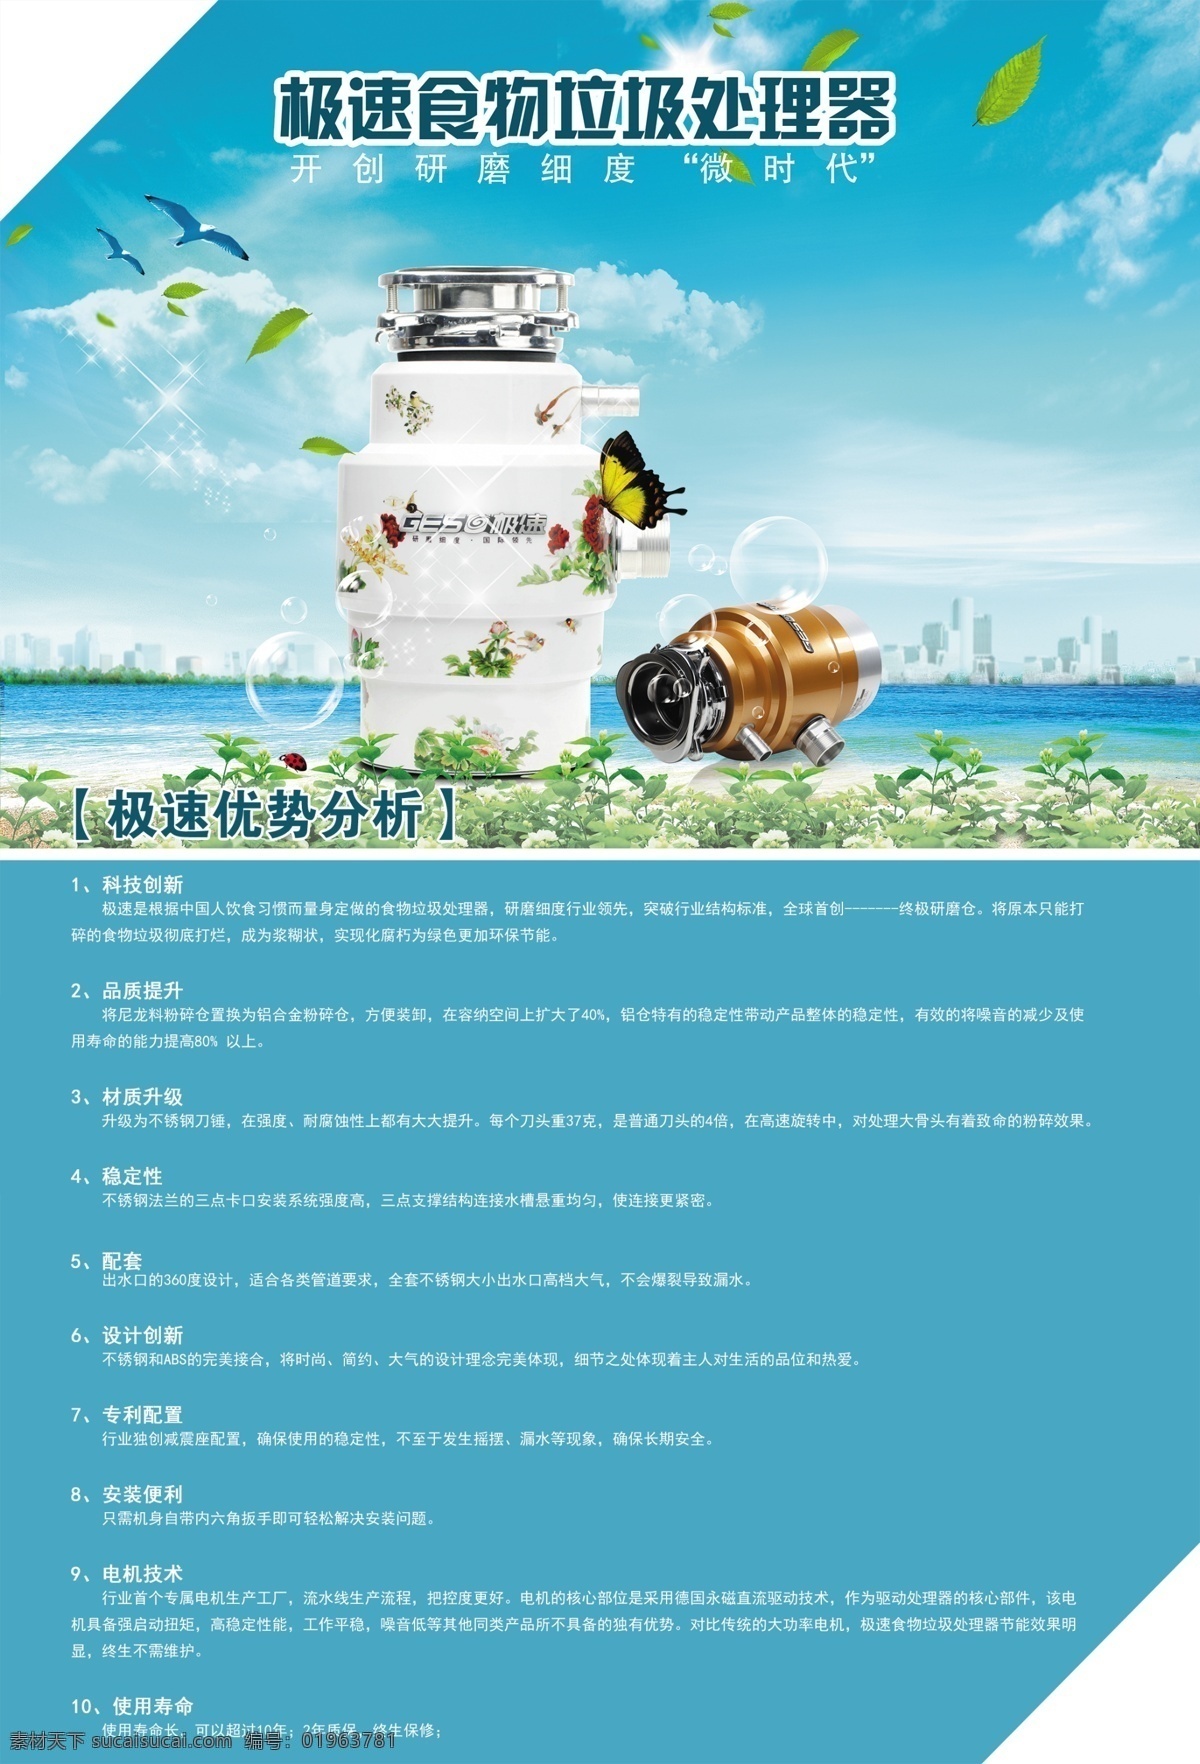 广州 极 速 食物 垃圾 处理器 十大 优势 垃圾处理器 广州极速 十大优势 广州蒙太奇 蓝色海报 厨房垃圾